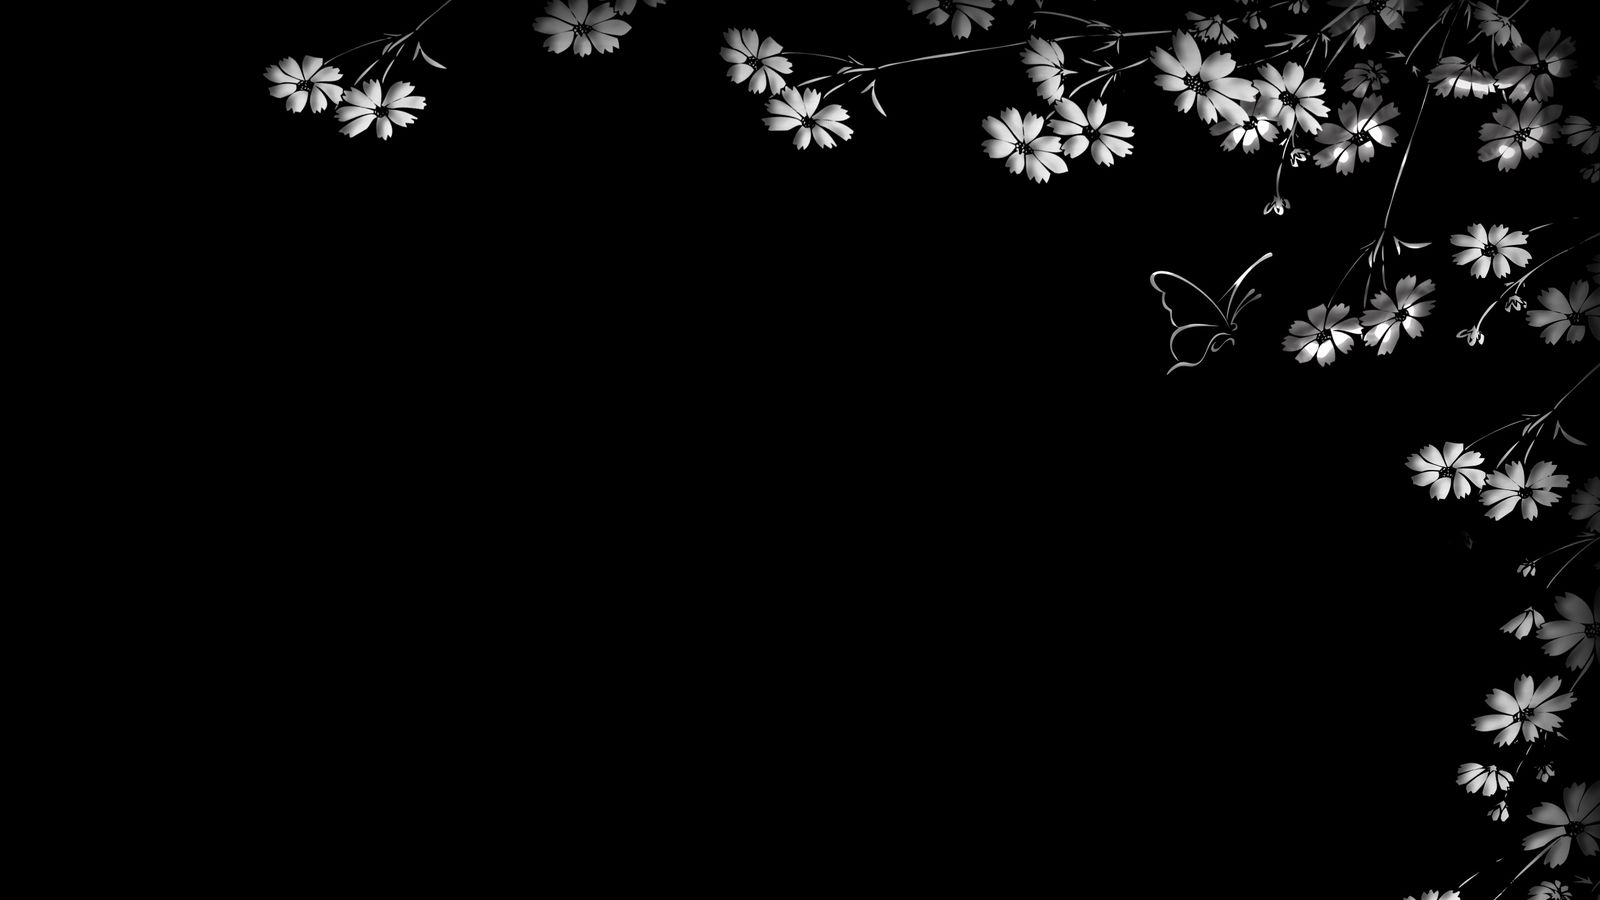 Hãy tải ngay hình nền hoa bướm đen 1600x900 để mang lại vẻ đẹp đặc biệt cho màn hình của bạn. Tỉ mỉ đến từng chi tiết với hoa và bướm tươi sáng trên nền đen, đây thực sự là một tuyệt tác nghệ thuật mà bạn không thể bỏ qua!